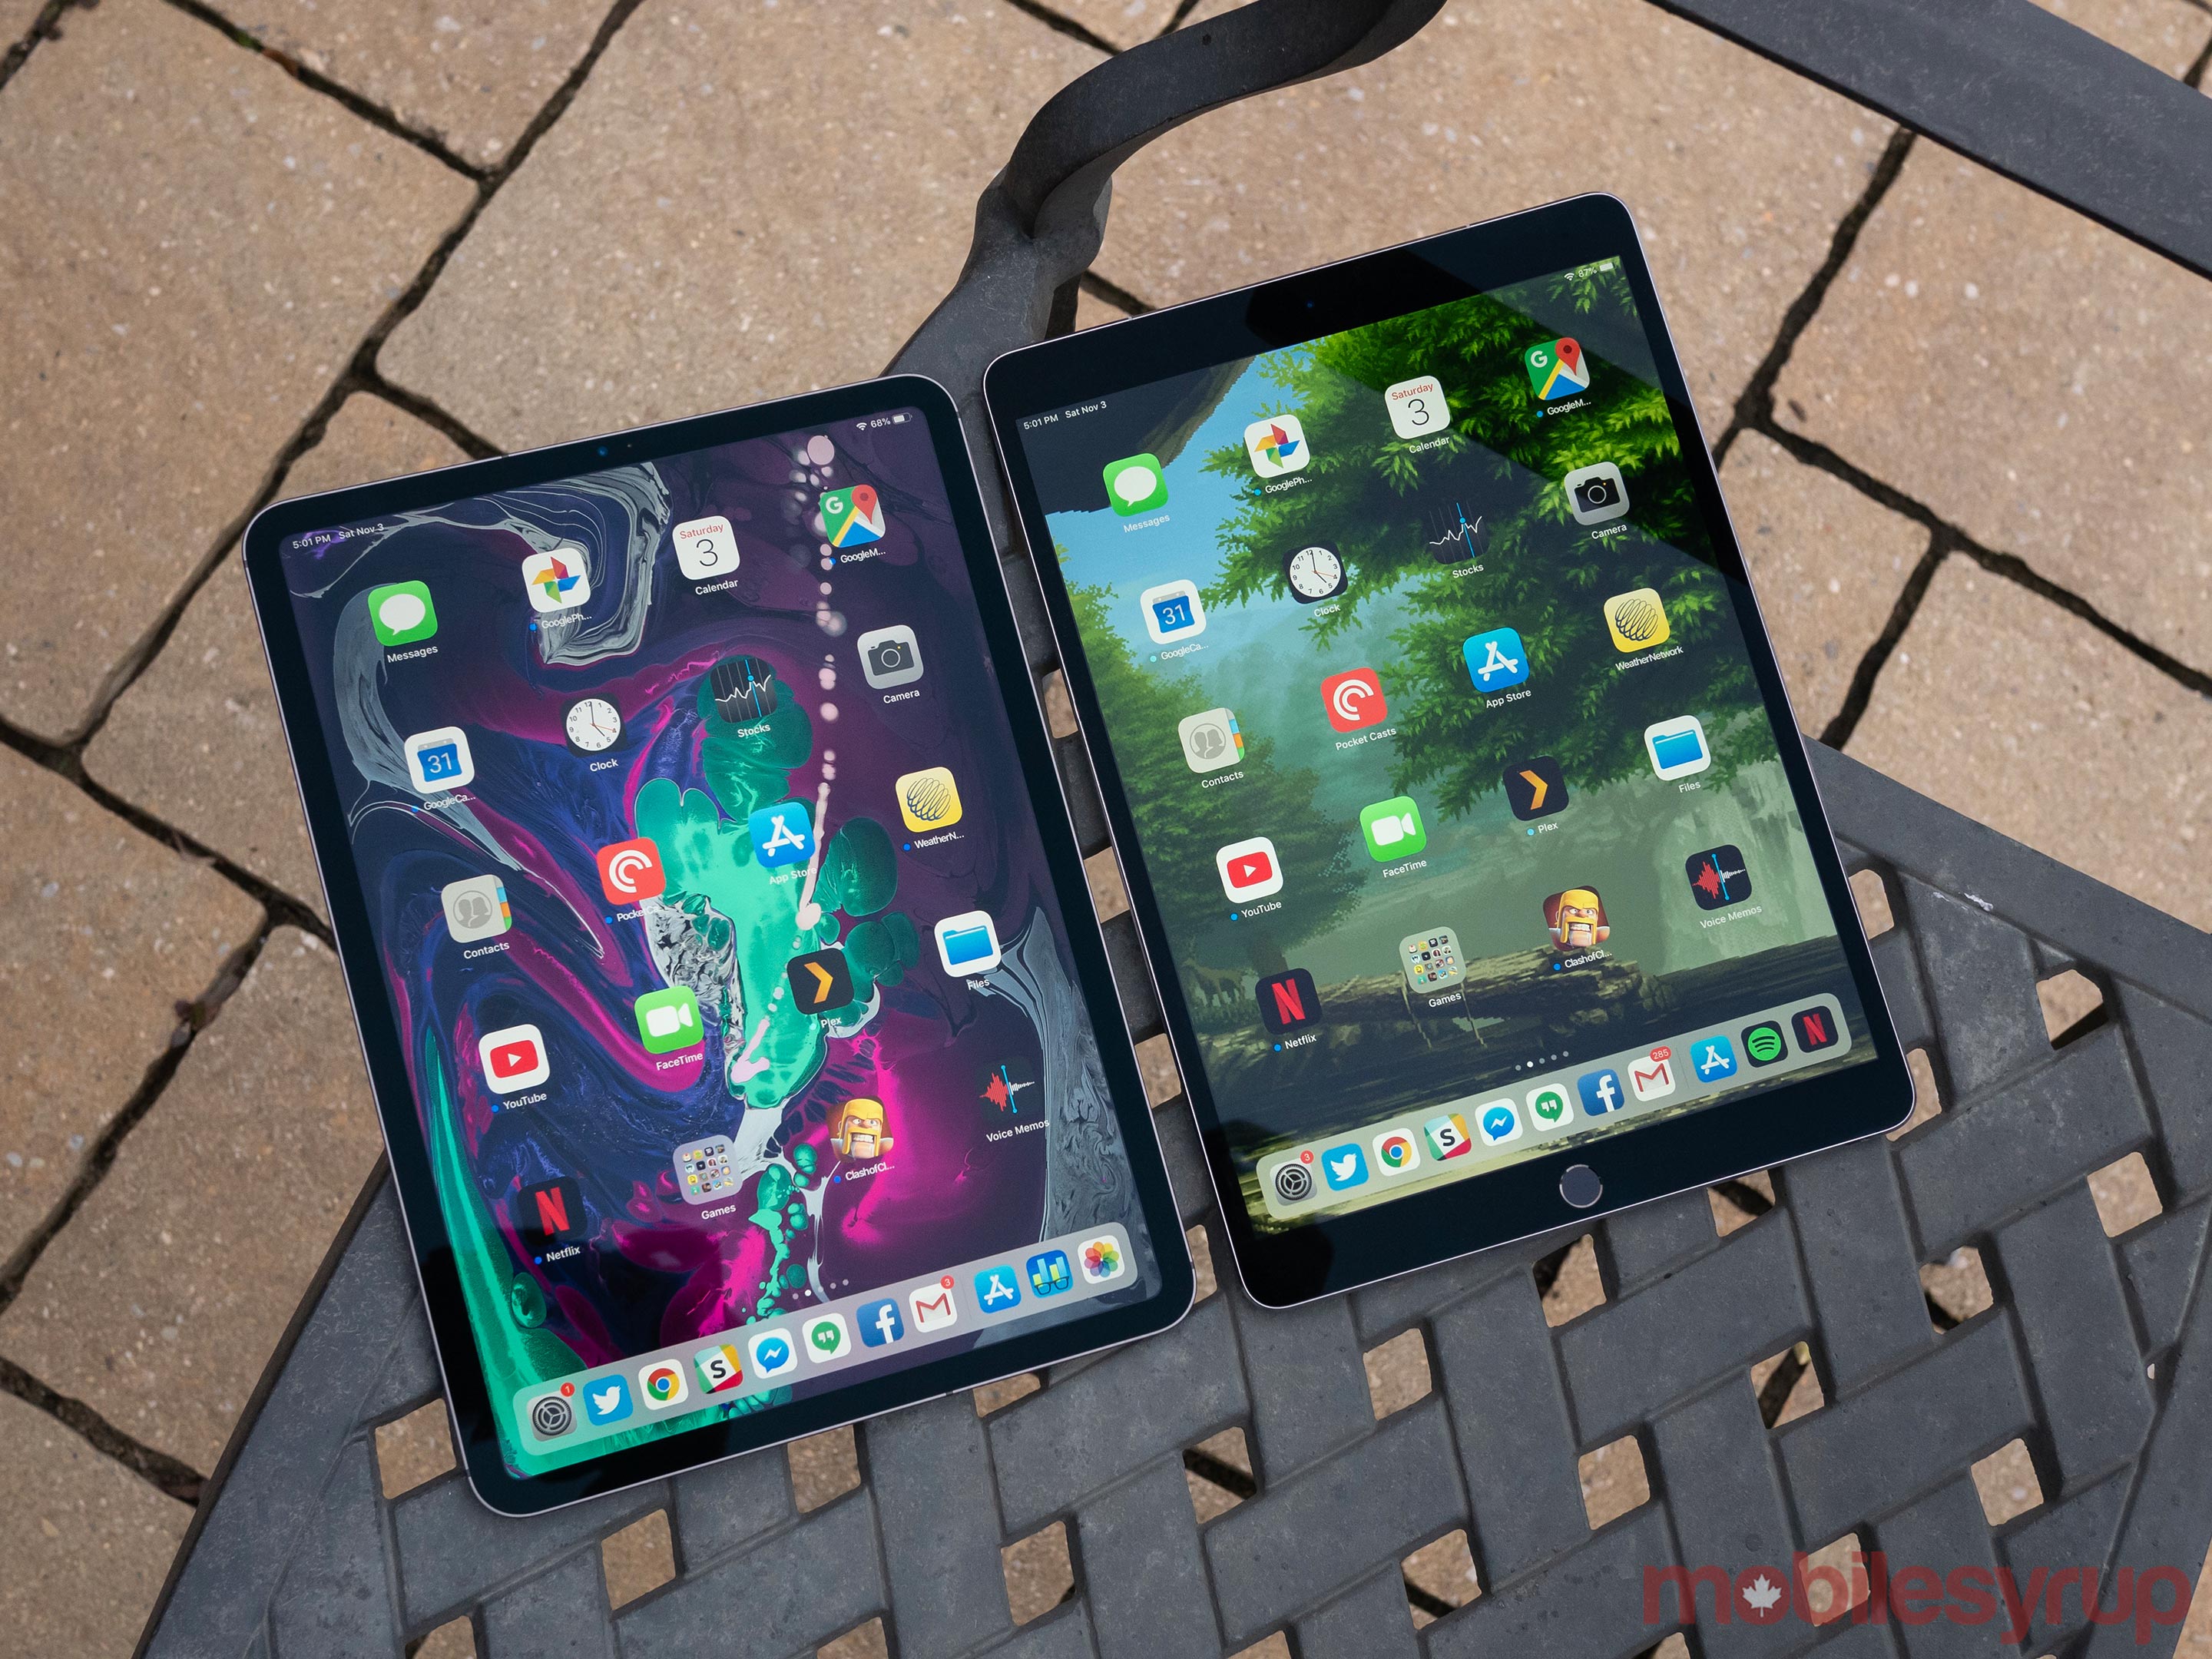 iPad Pro 2018 and iPad Pro 2017